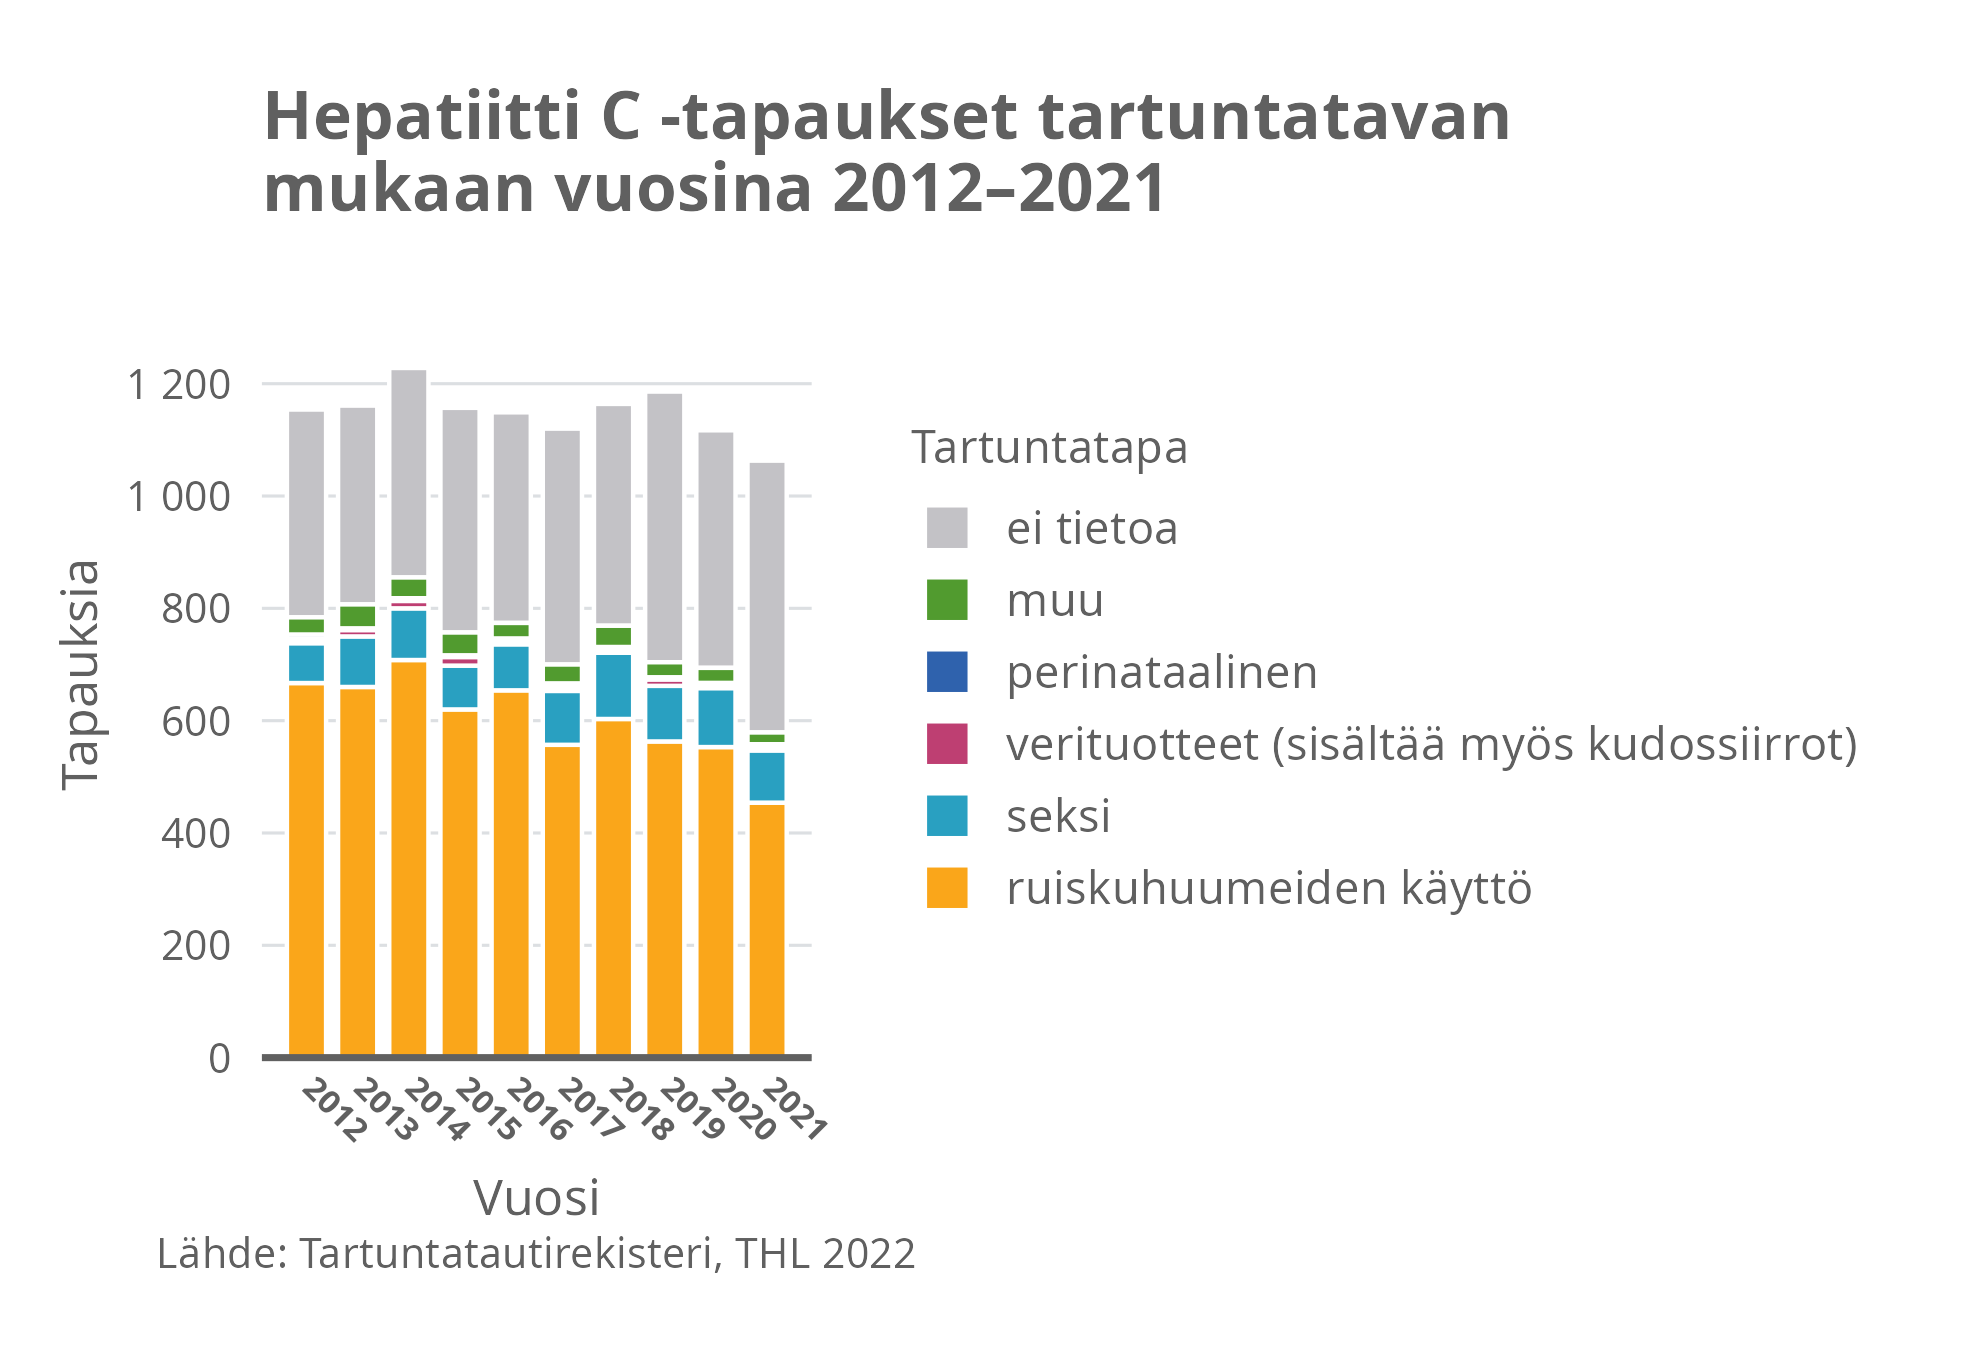 Hepatiitti C-tapaukset tartuntatavan mukaan vuosina 2012-2021.